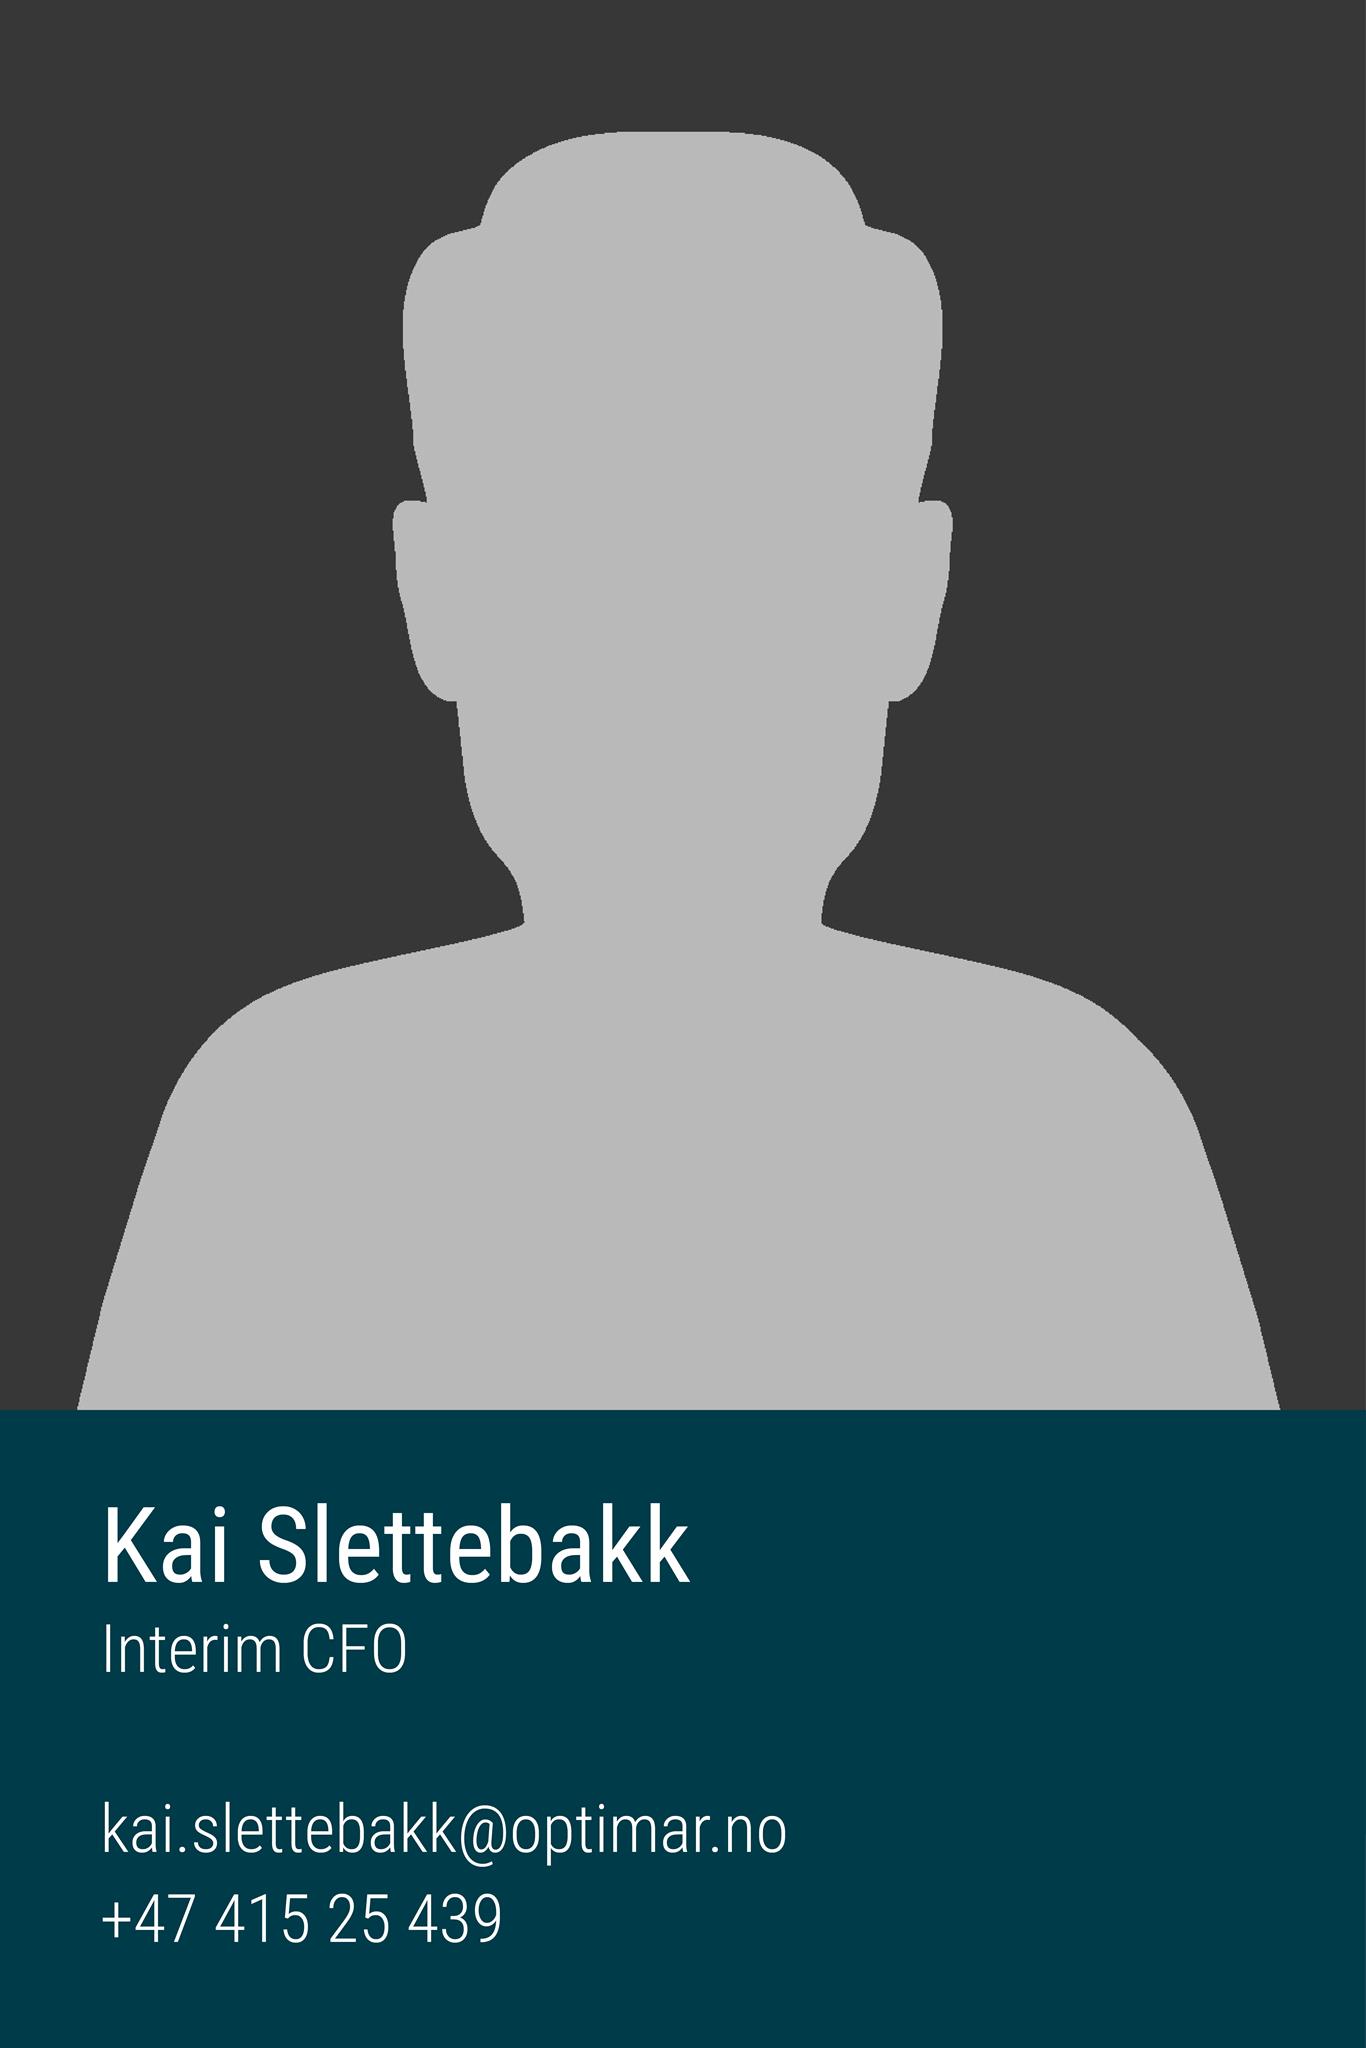 Kai Slettebakk